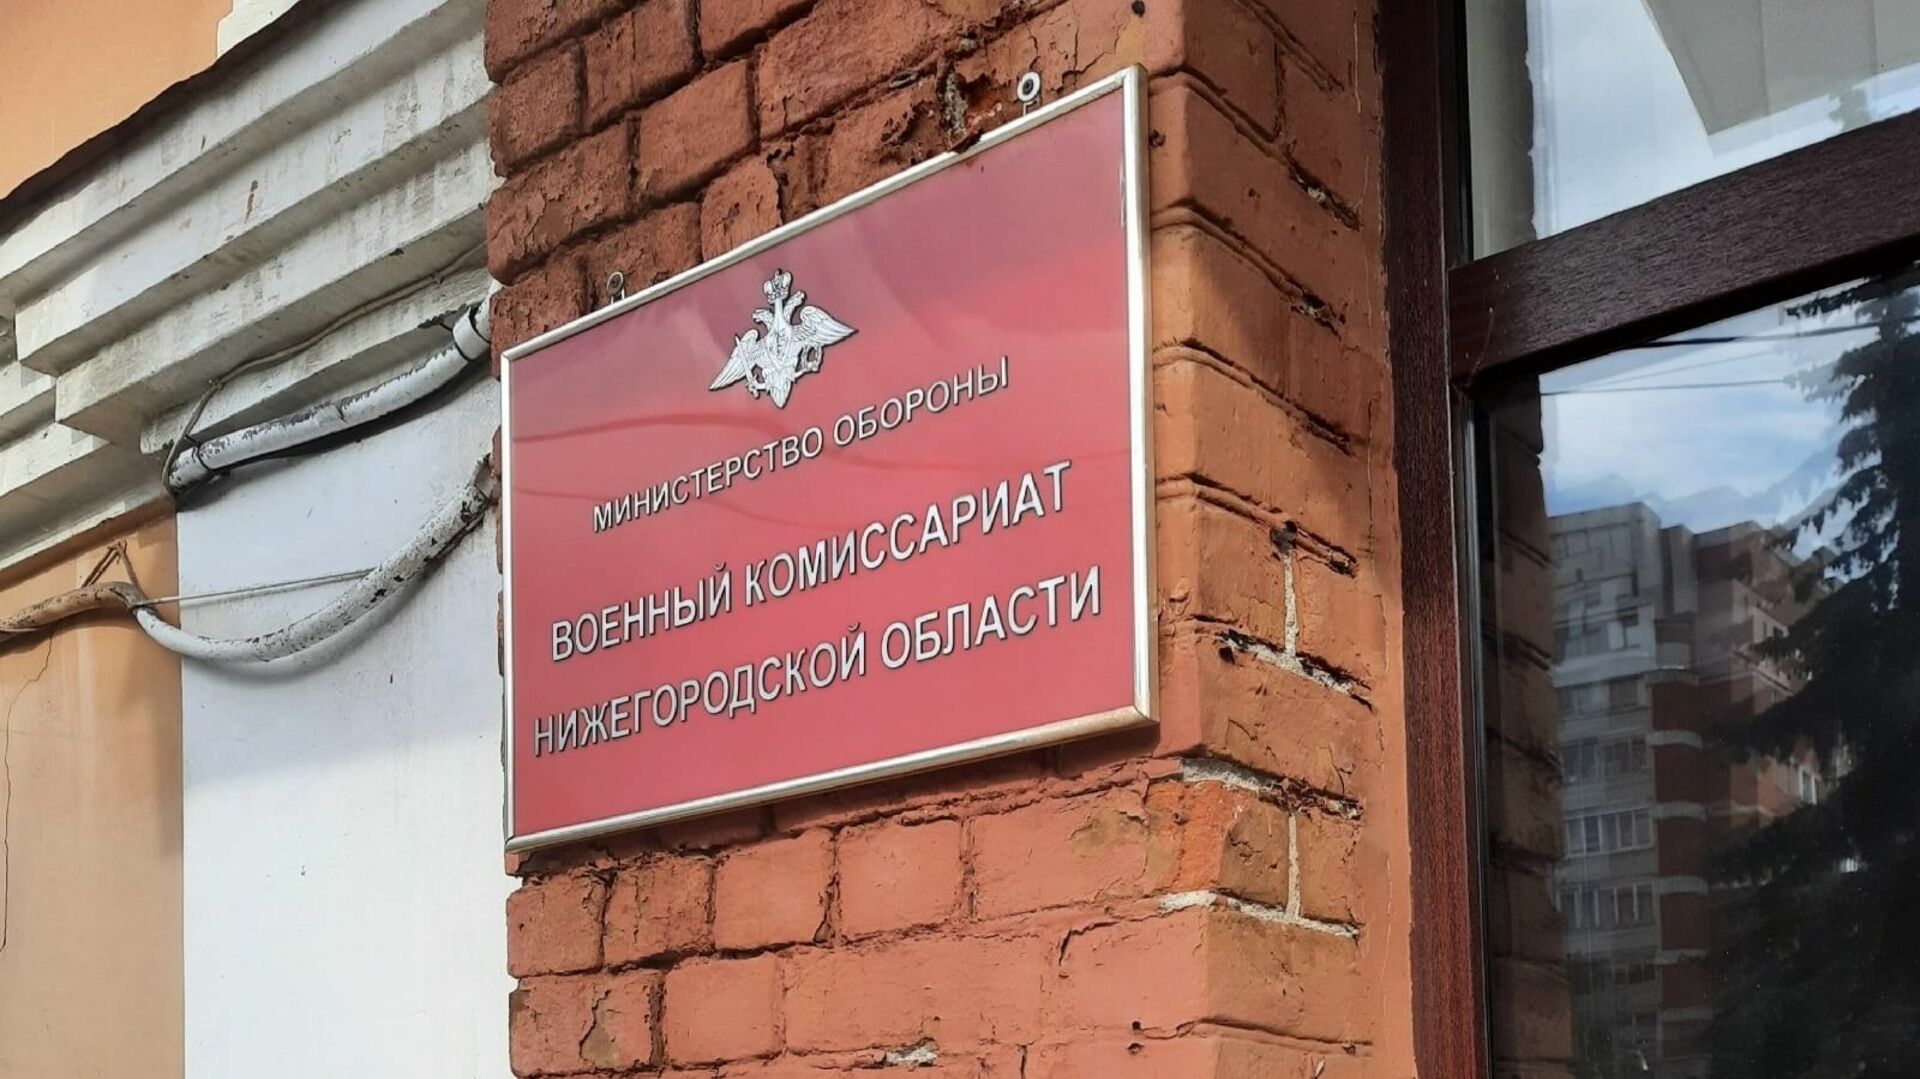 Нижегородский военкомат сайт